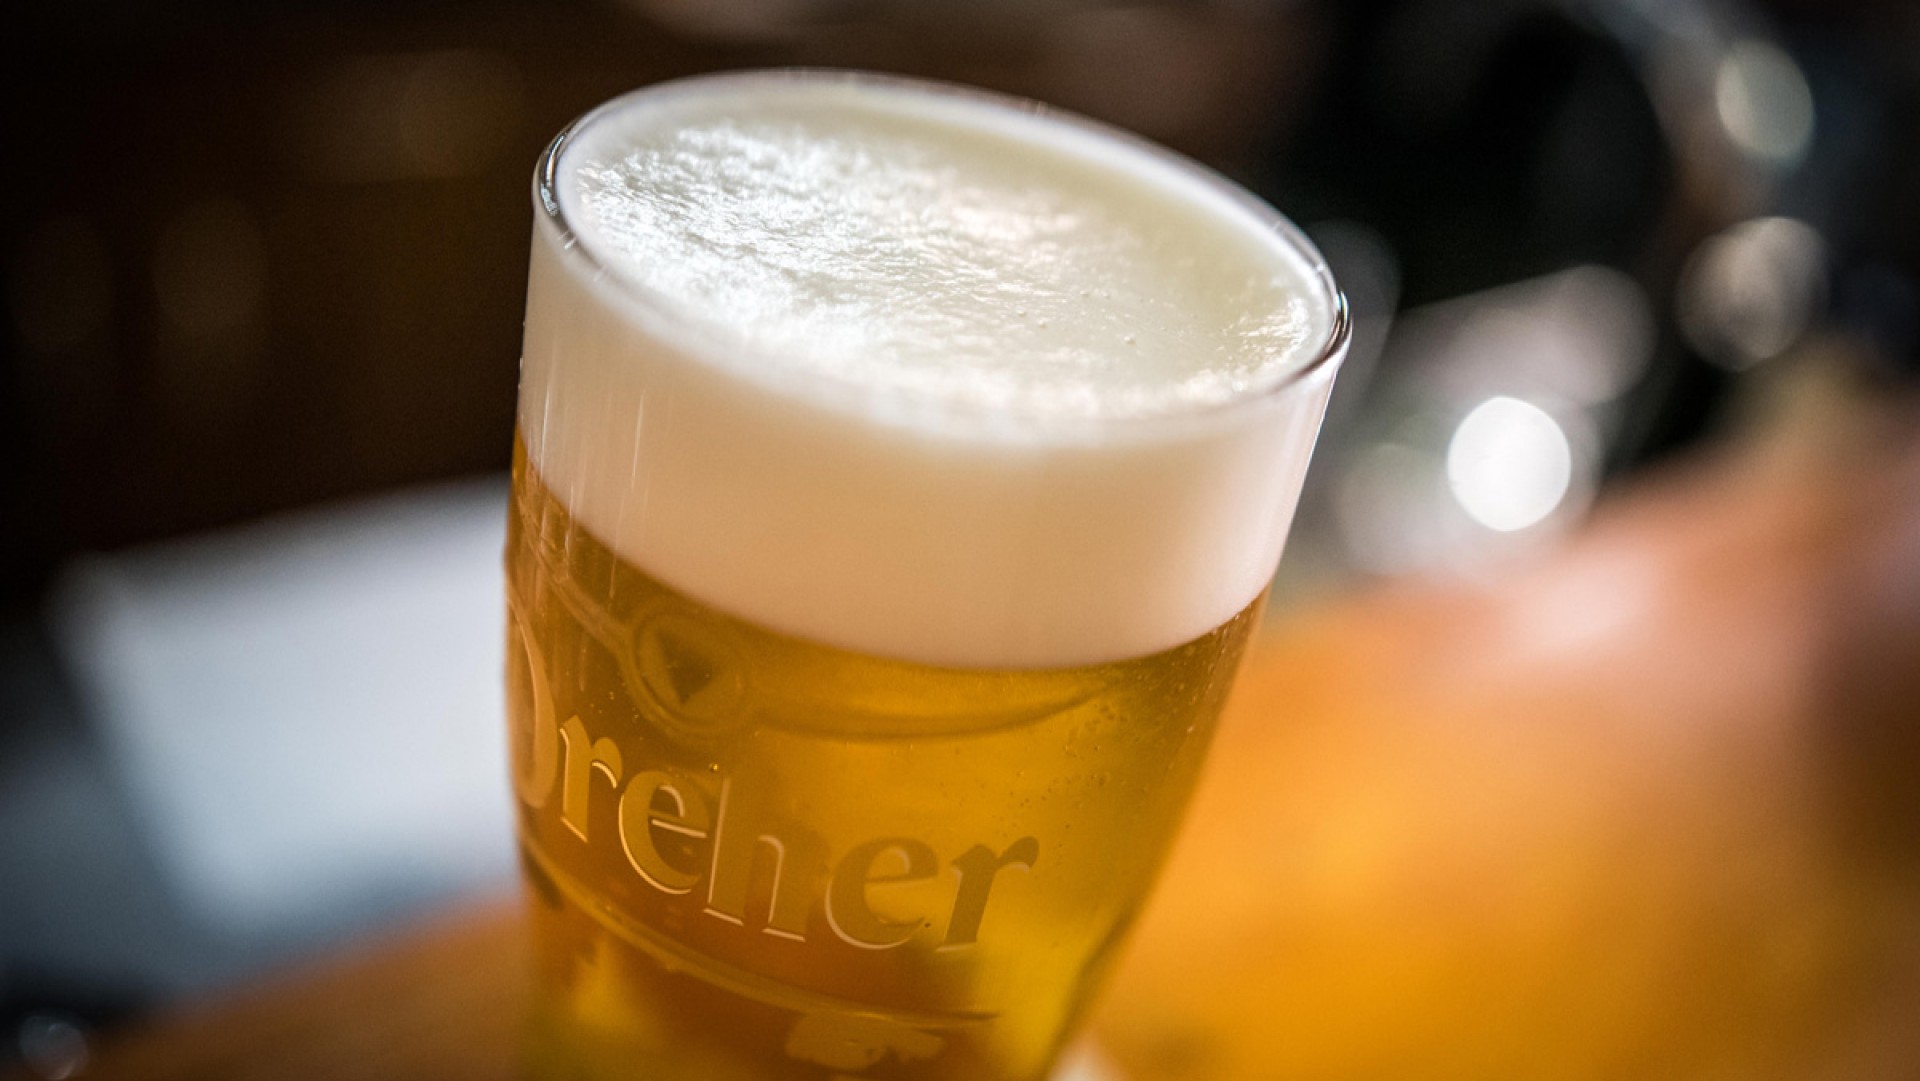 Ingyen adja a sört az újranyitó vendéglátóknak a Dreher